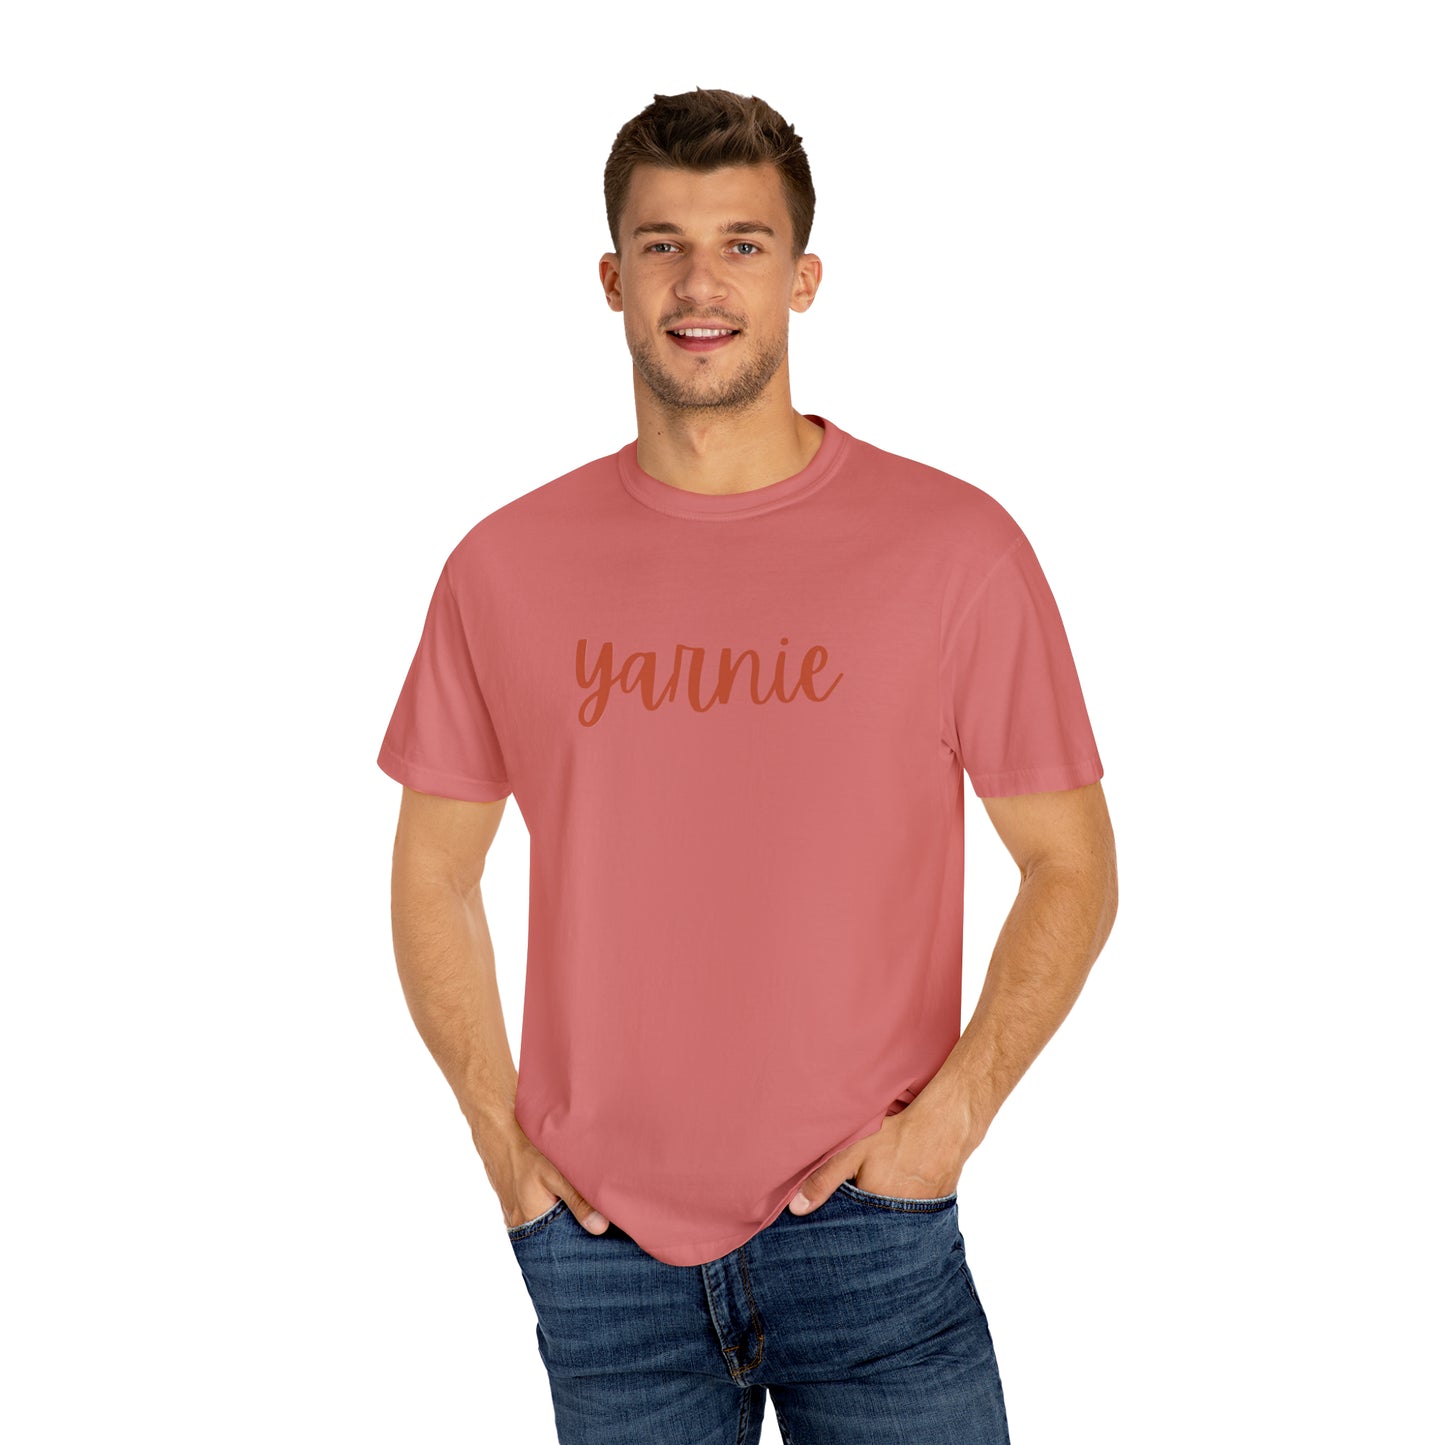 Yarnie T-Shirt